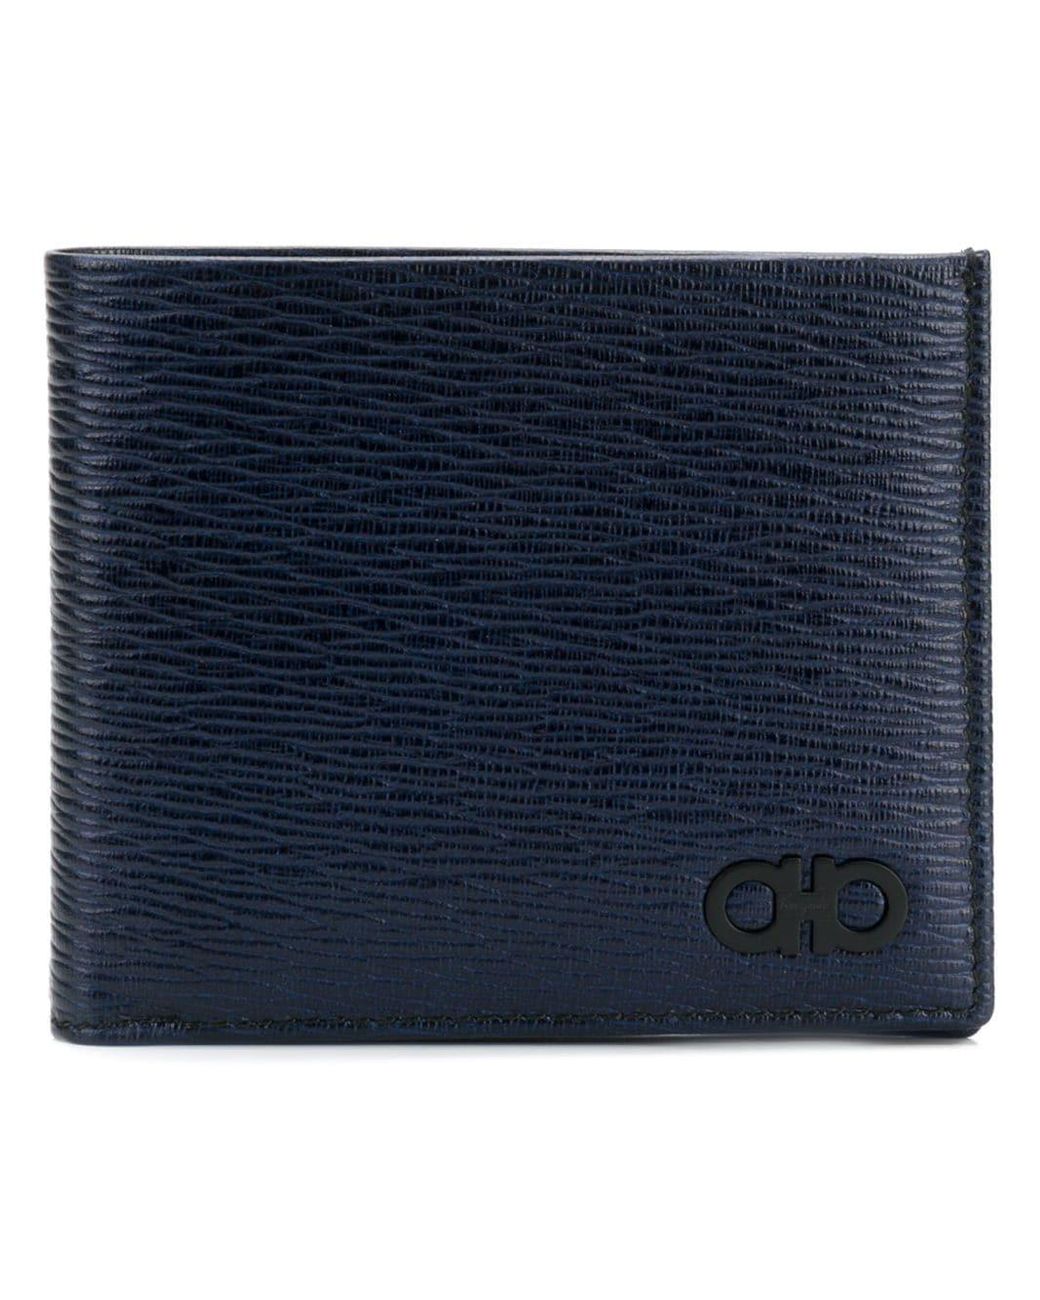 Salvatore Ferragamo - Men's Double Gancini Pebbled Leather Blue Wallet